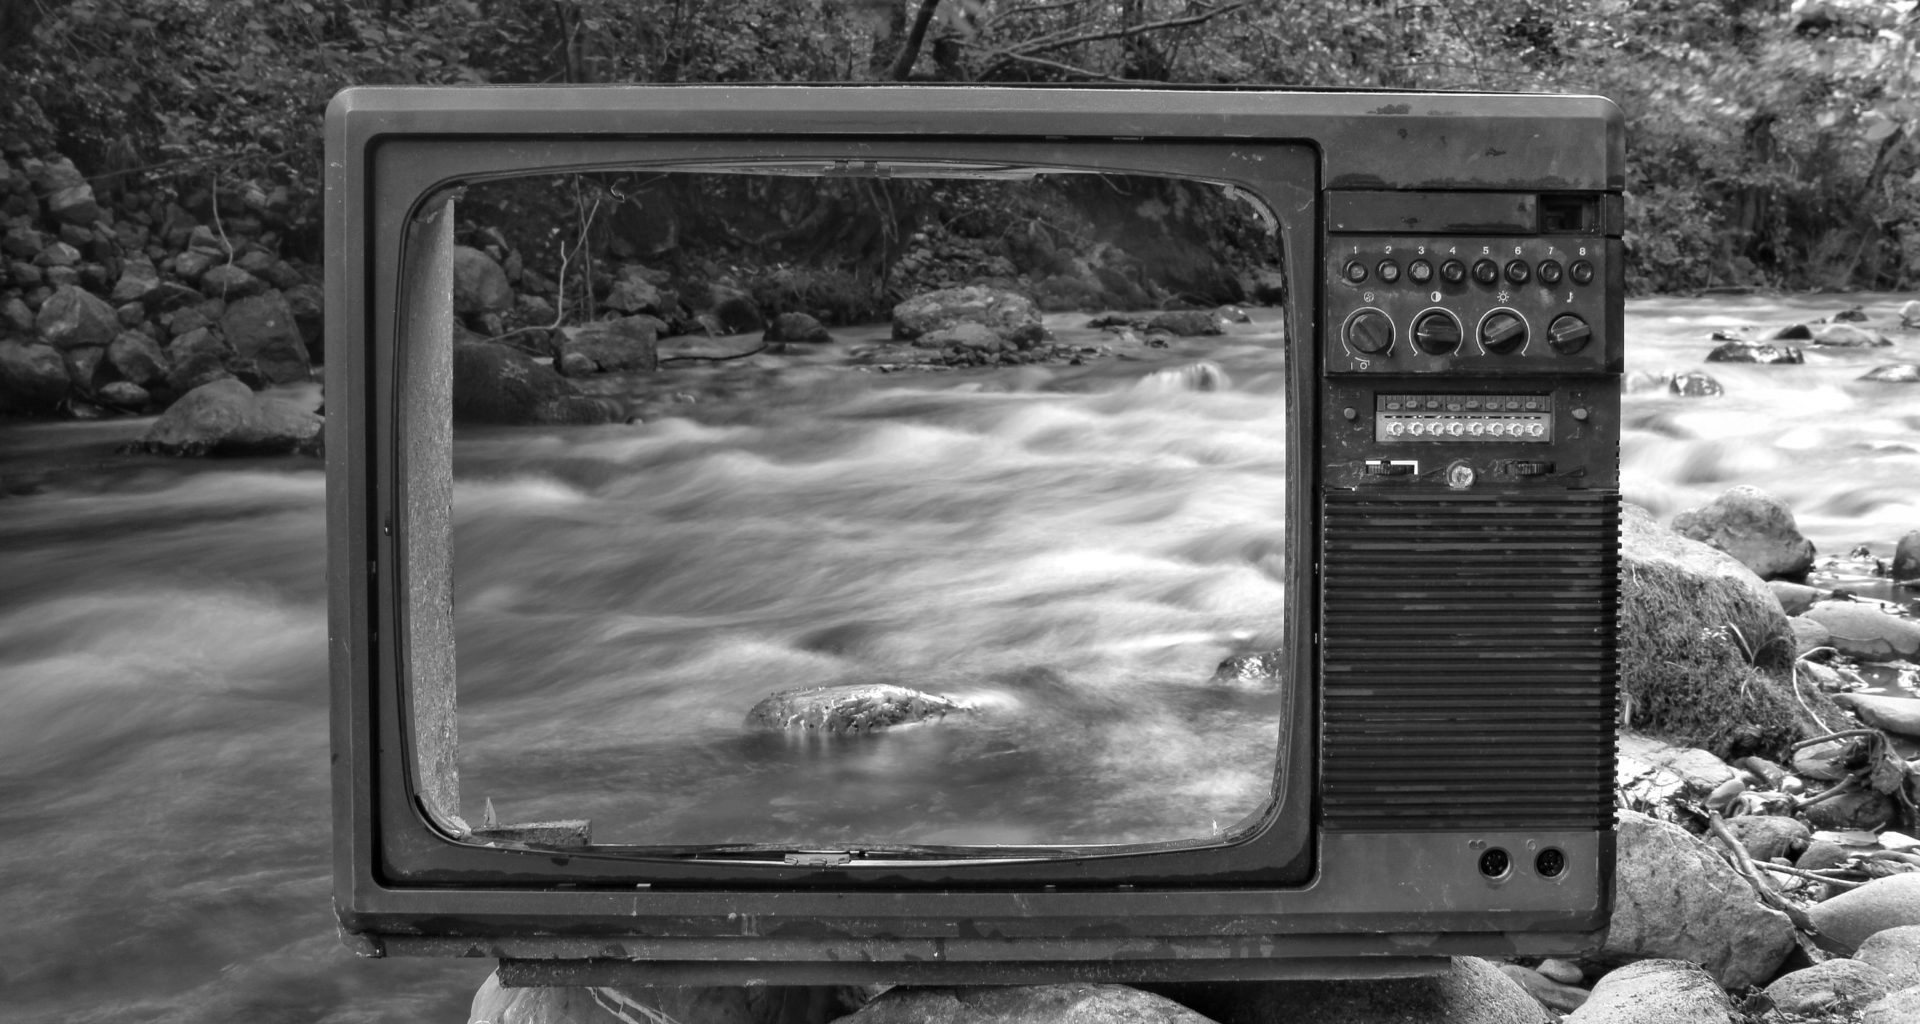 Fernseher ohne Glas vor verschwommenem Gewässer mit starker Strömung in schwarz weiß